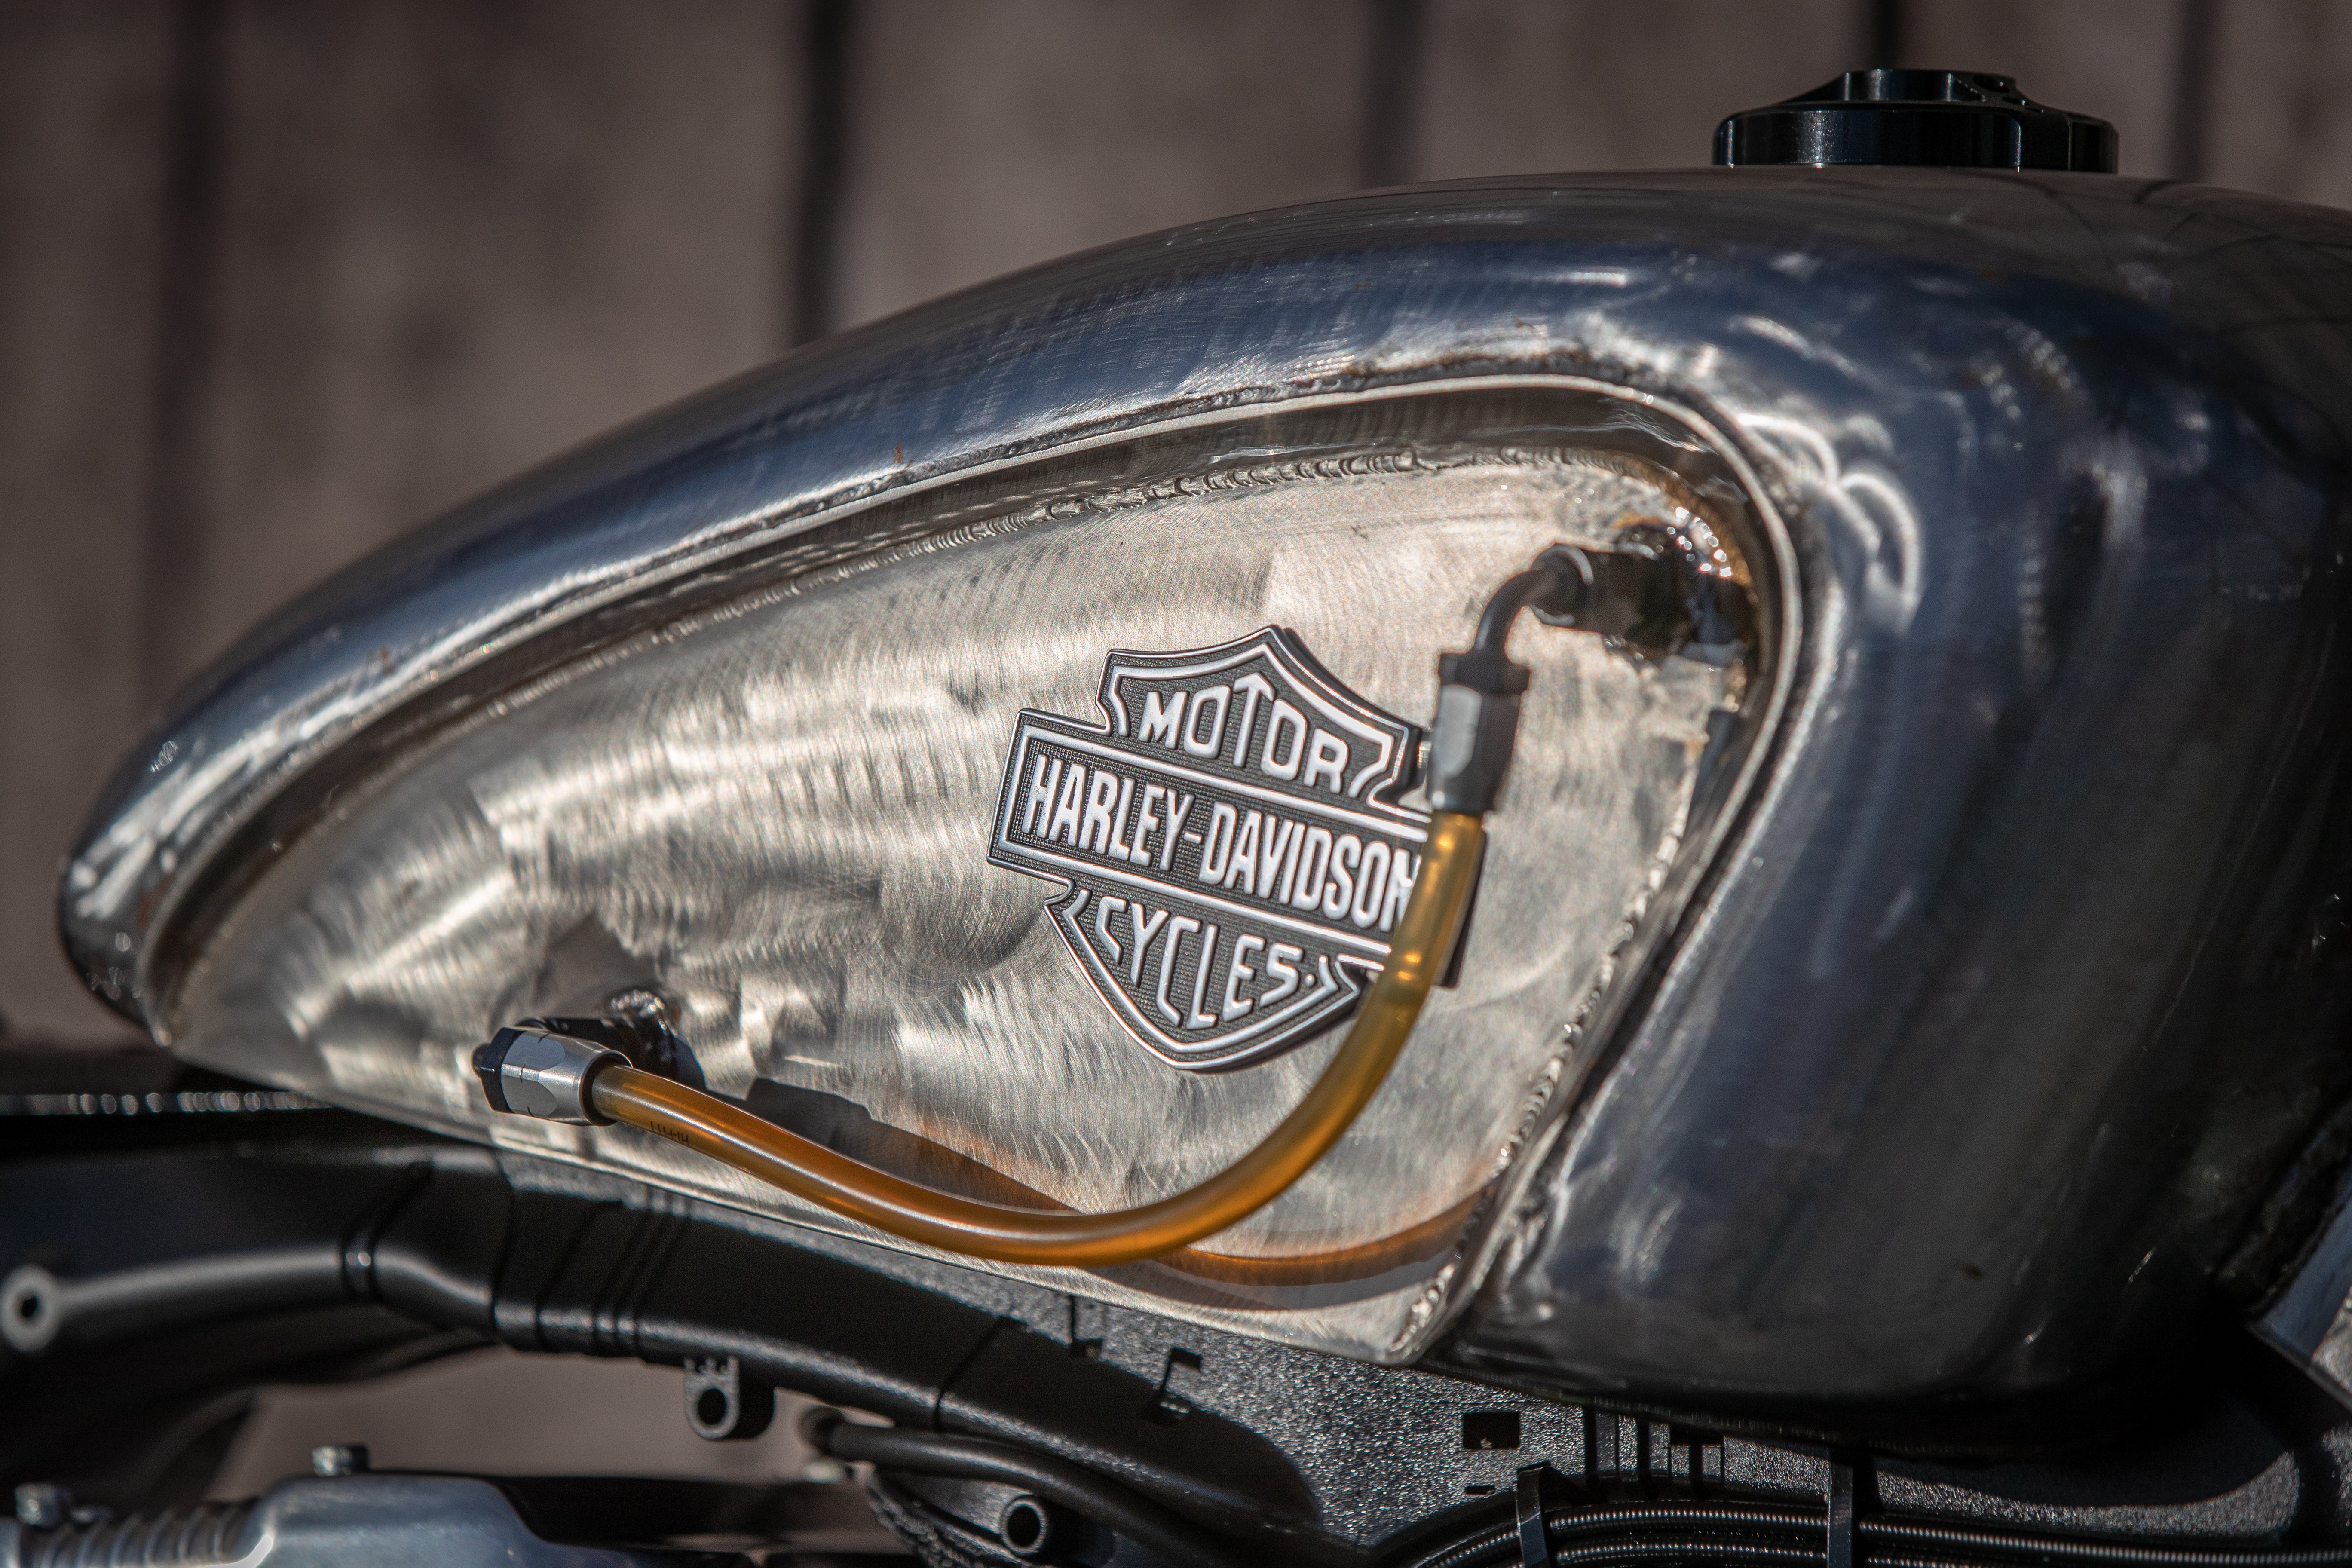 Ngam dan xe Harley-Davidson Sportster lot xac voi ban do Sykes hinh anh 36 2020_Harley_Davidson_Sportster_Custom_5322.jpg